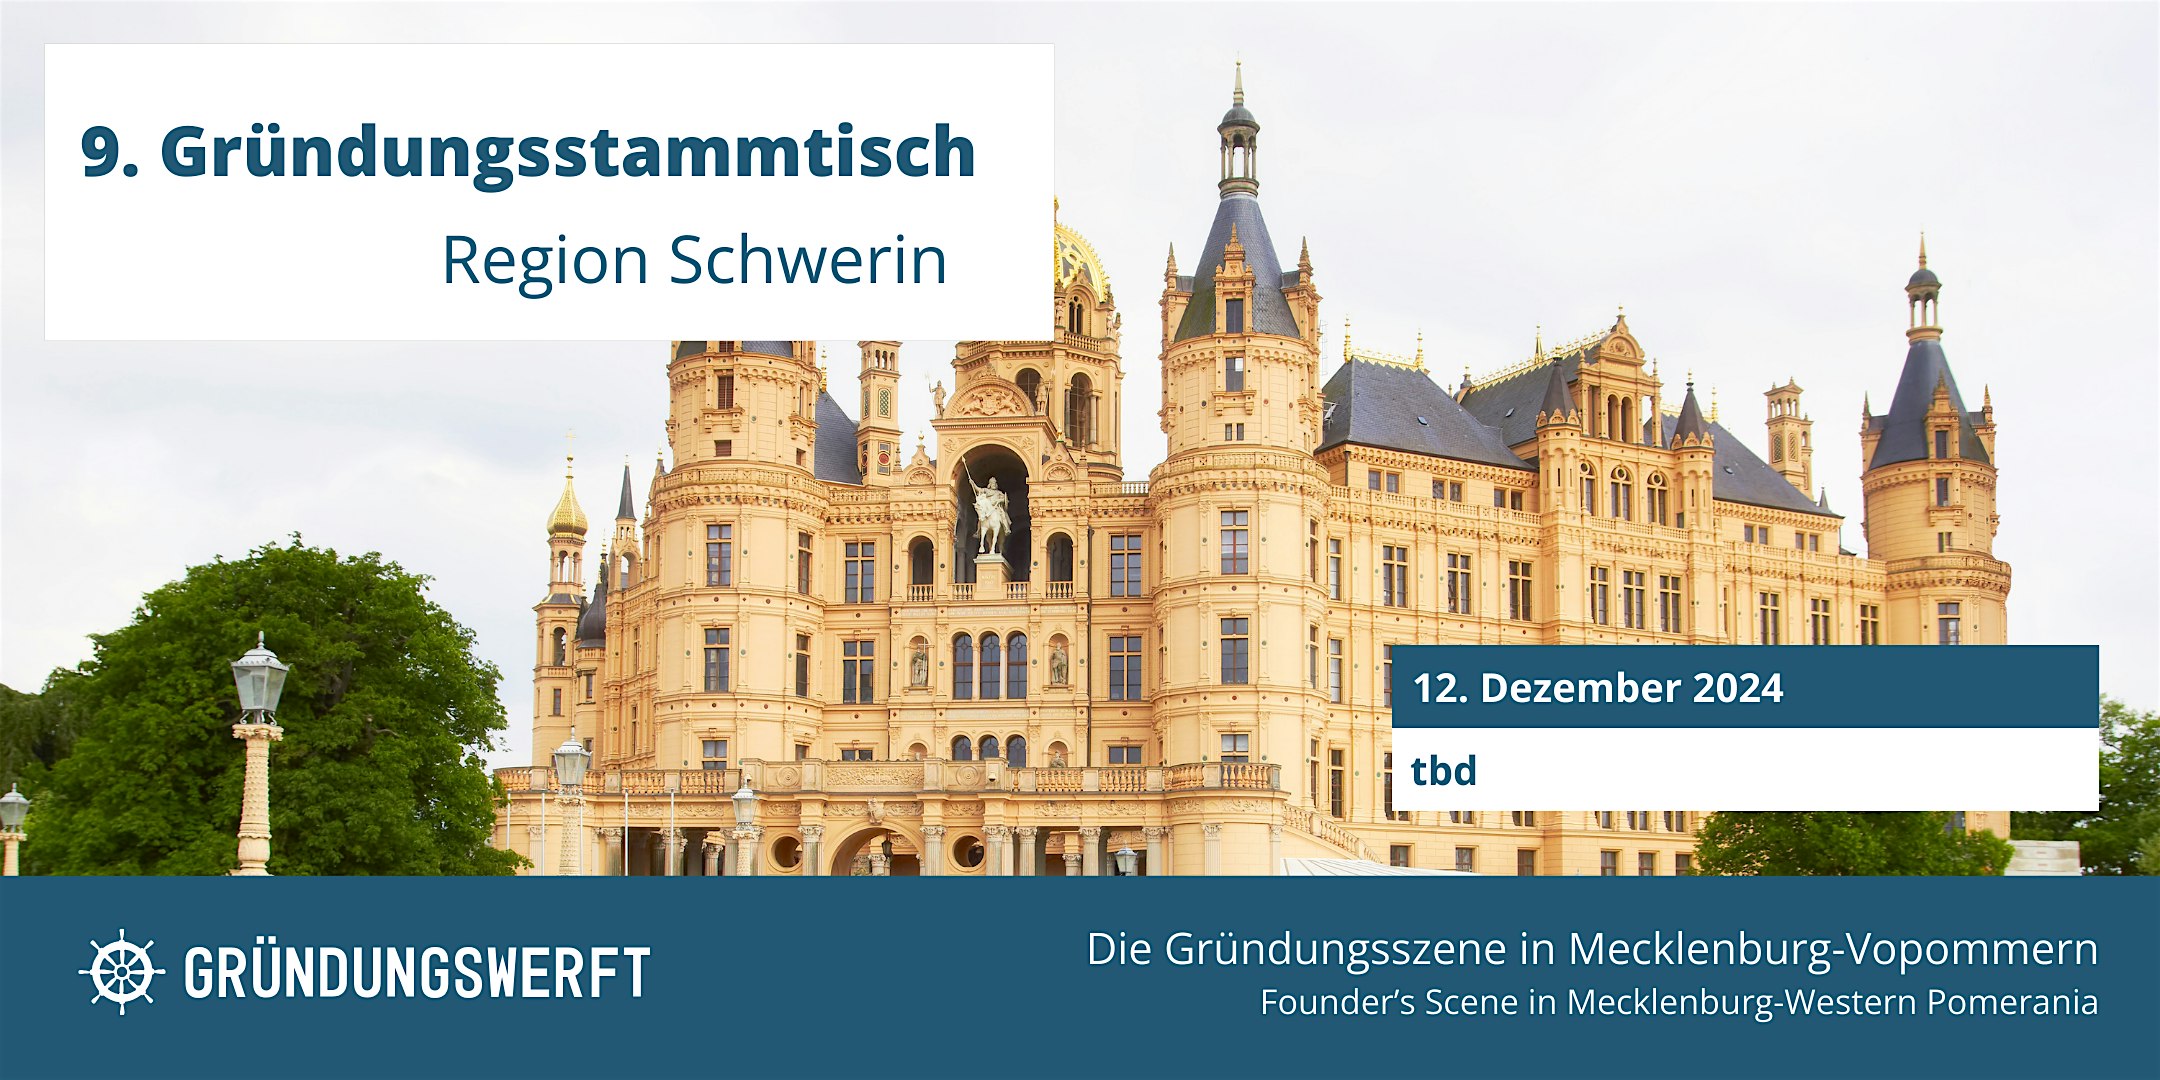 Veranstaltungsbild für die Veranstaltung 9. Gründungsstammtisch Region Schwerin